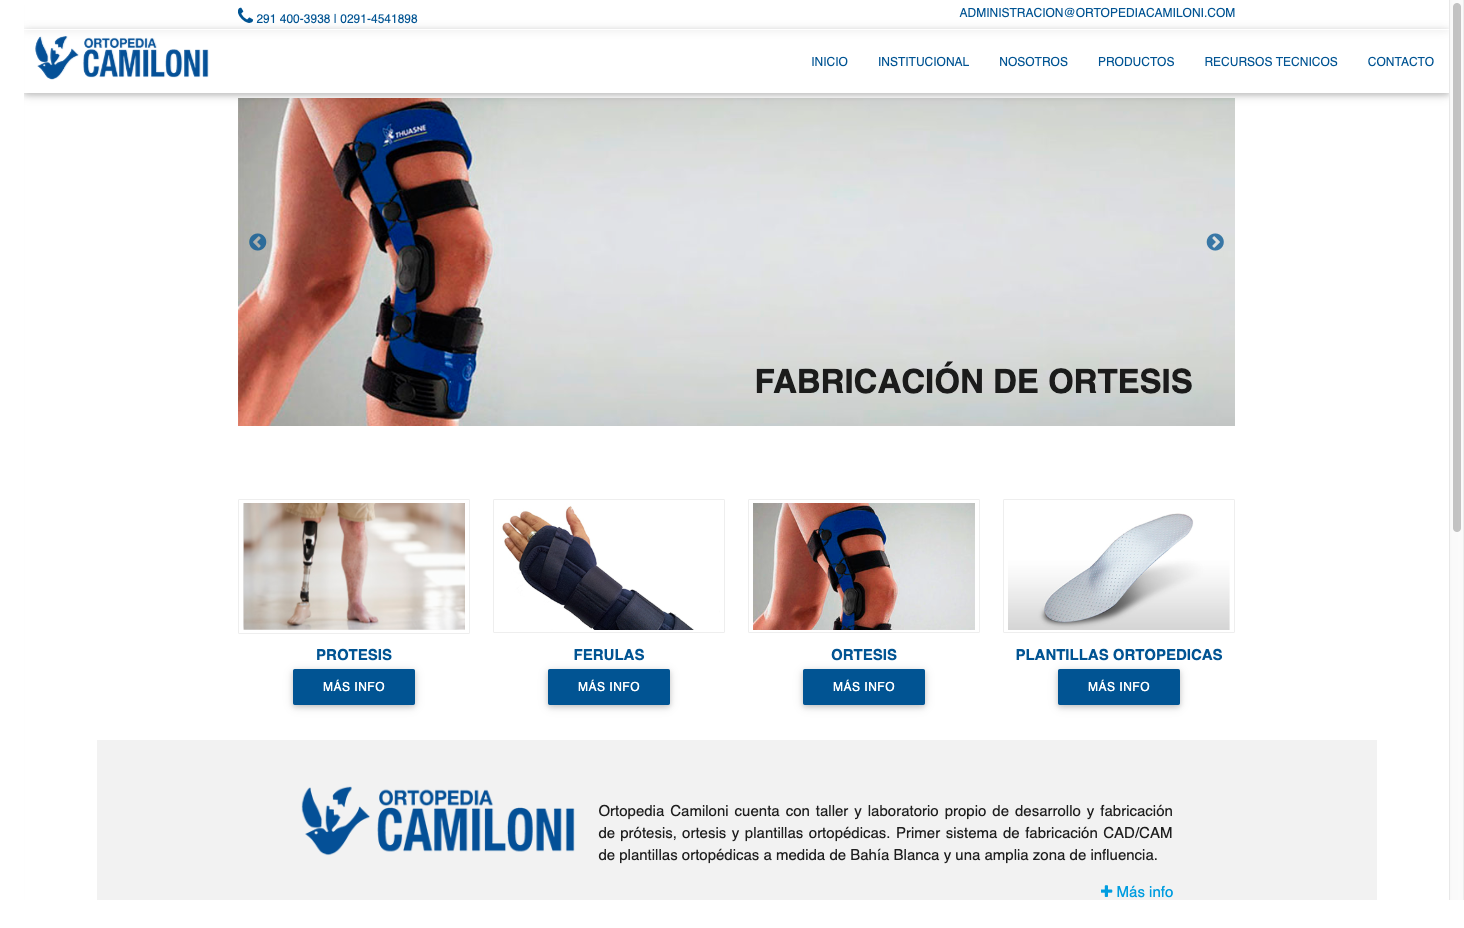 Ortopedia Camiloni